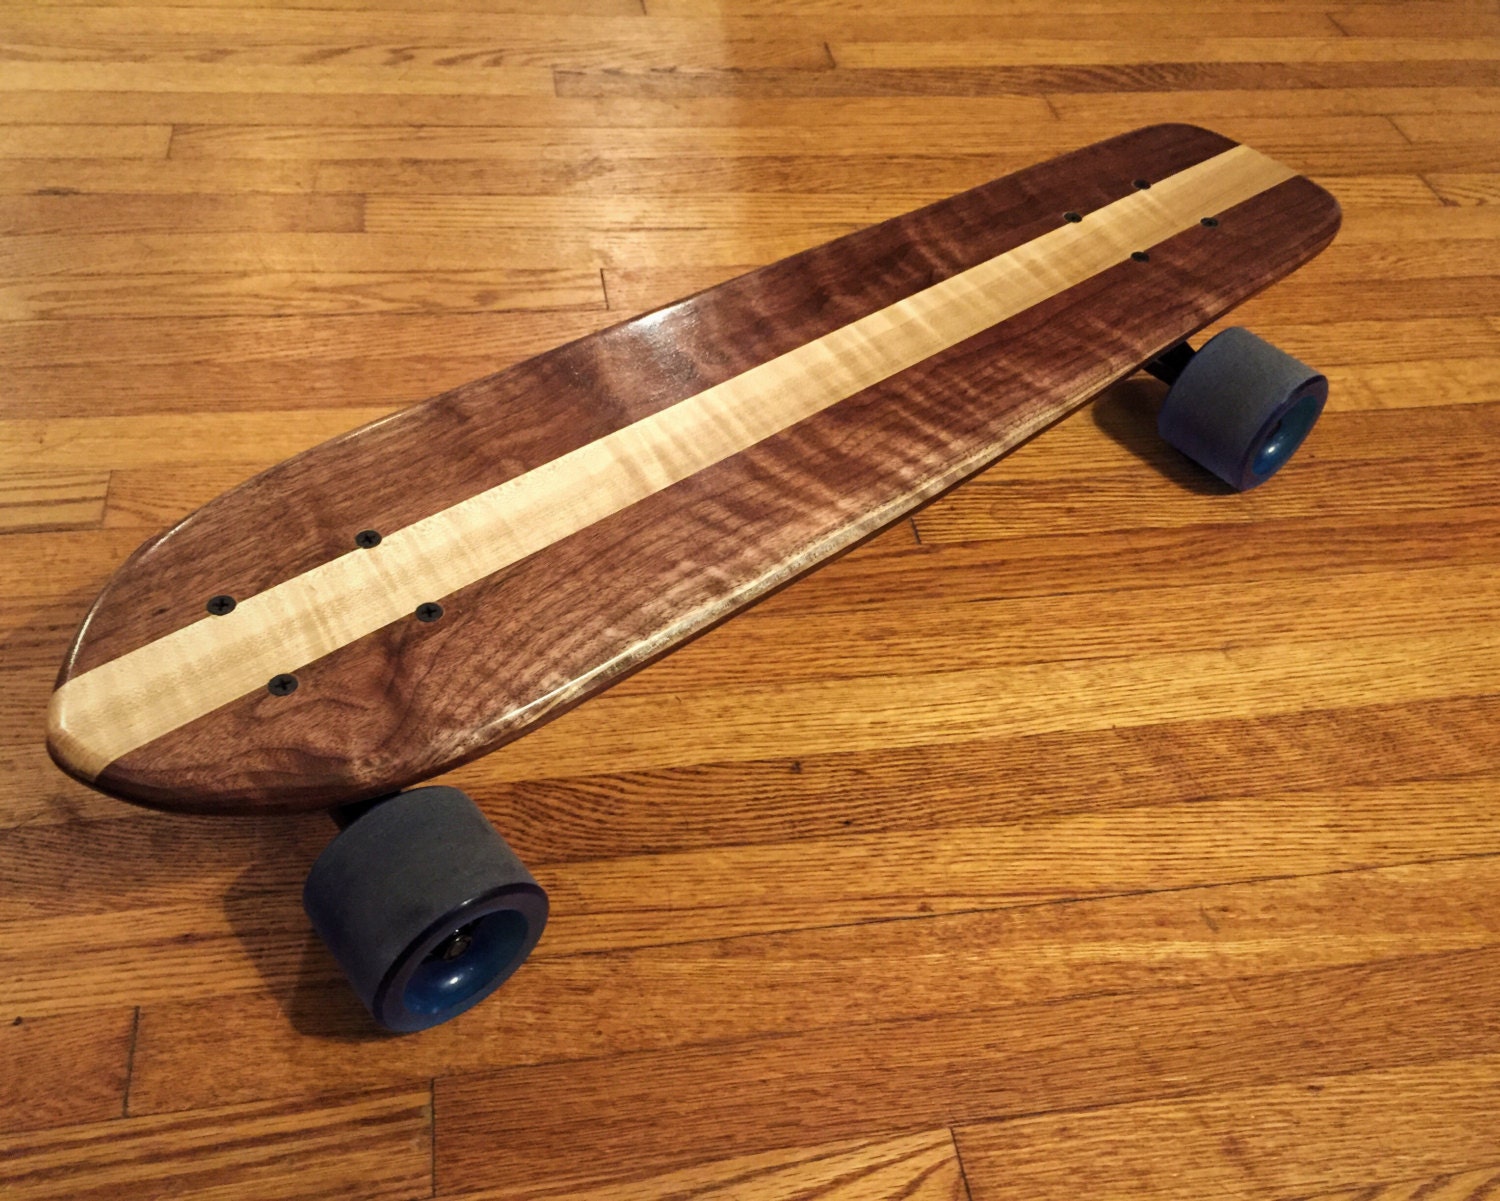 Figured Walnut/Maple Wood Cruiser Skateboard / Penny Board